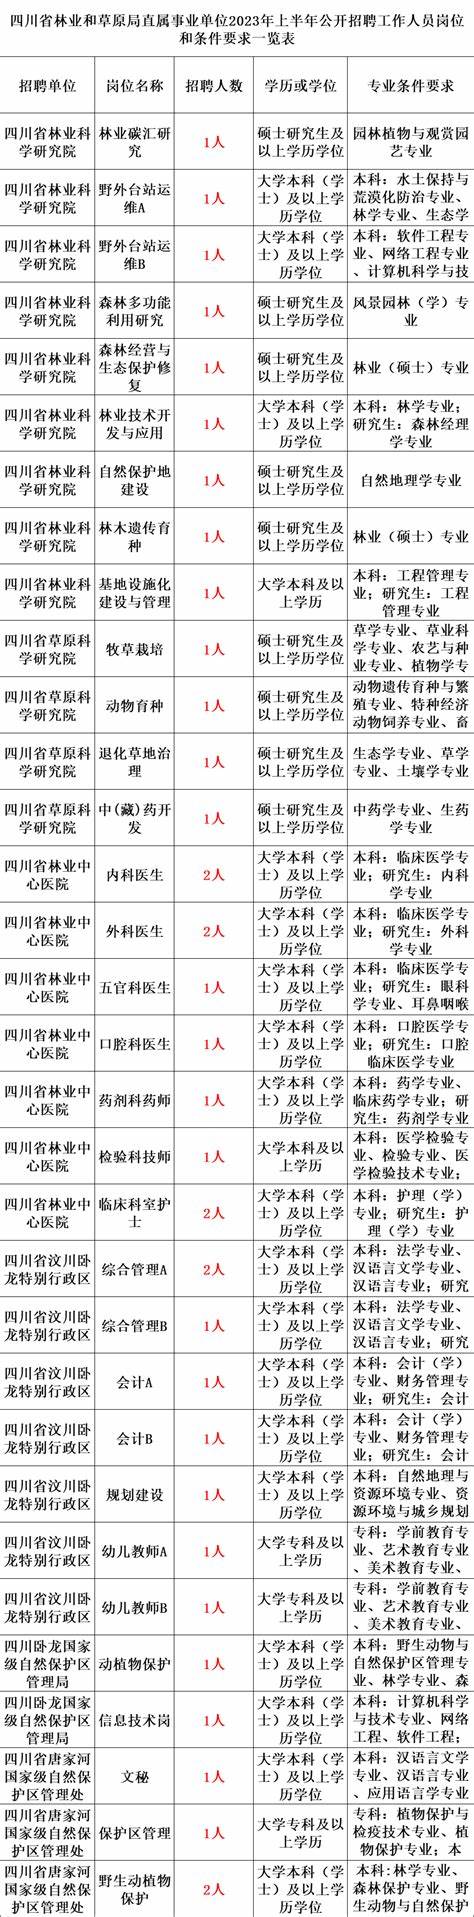 2020年江西省事业单位招聘职位表